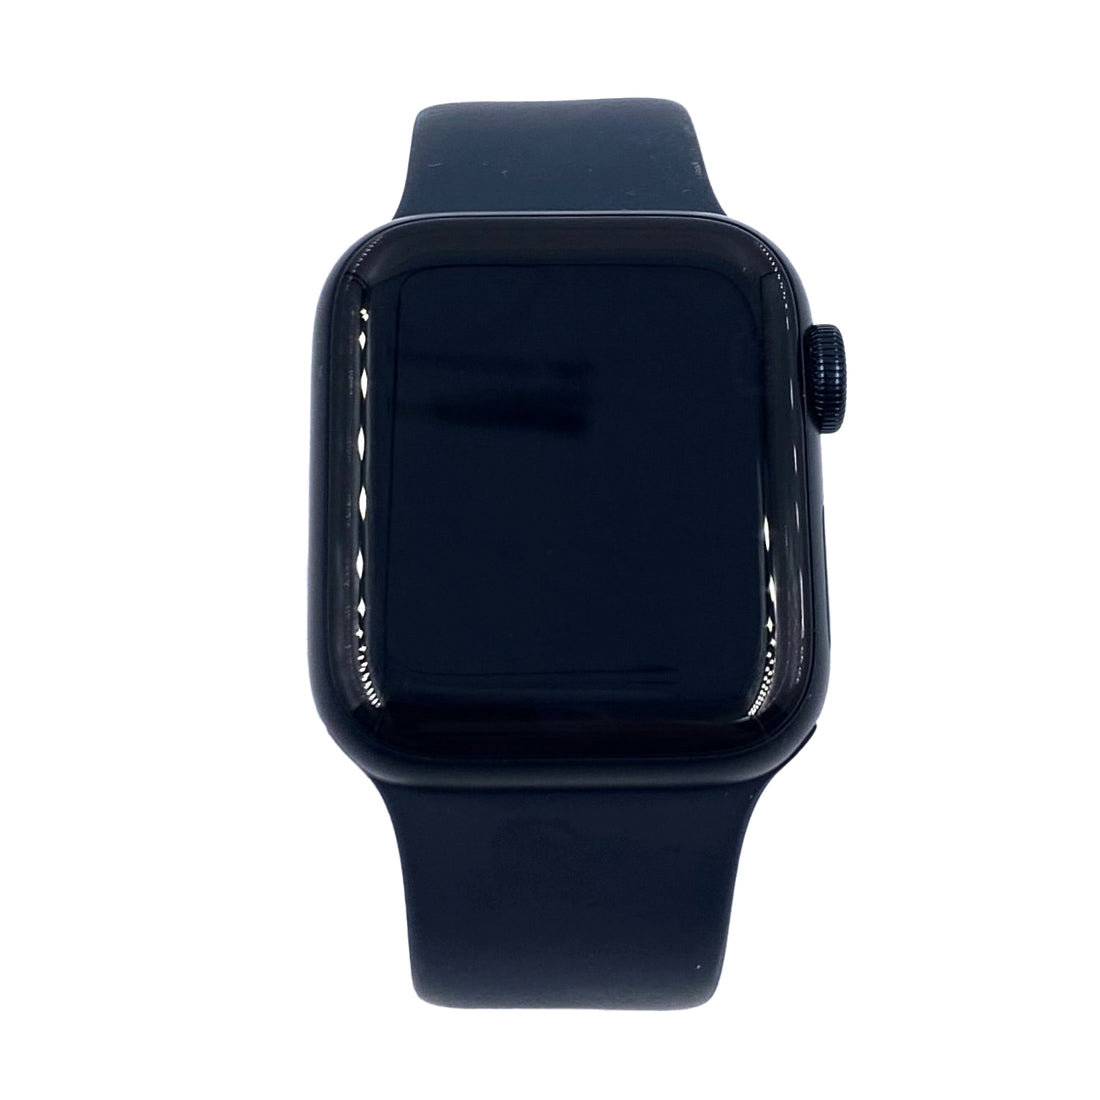 Smartwatch Apple Se 2 Aluminio (seminuevo)